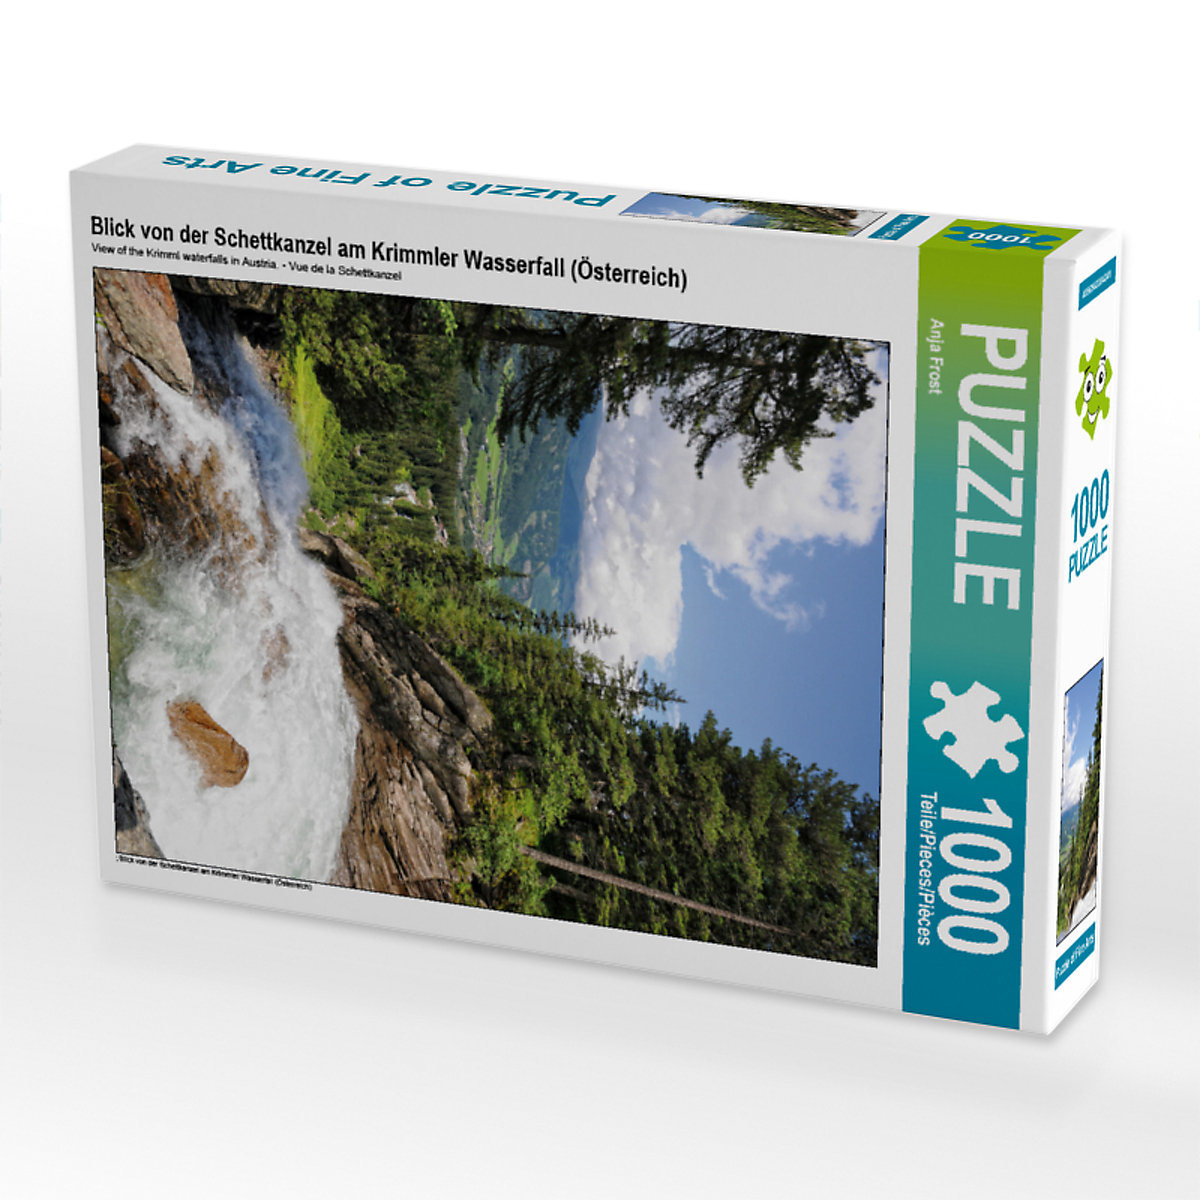 CALVENDO® Puzzle CALVENDO Puzzle Blick von der Schettkanzel am Krimmler Wasserfall (Österreich) 1000 Teile Foto-Puzzle für glückliche Stunden